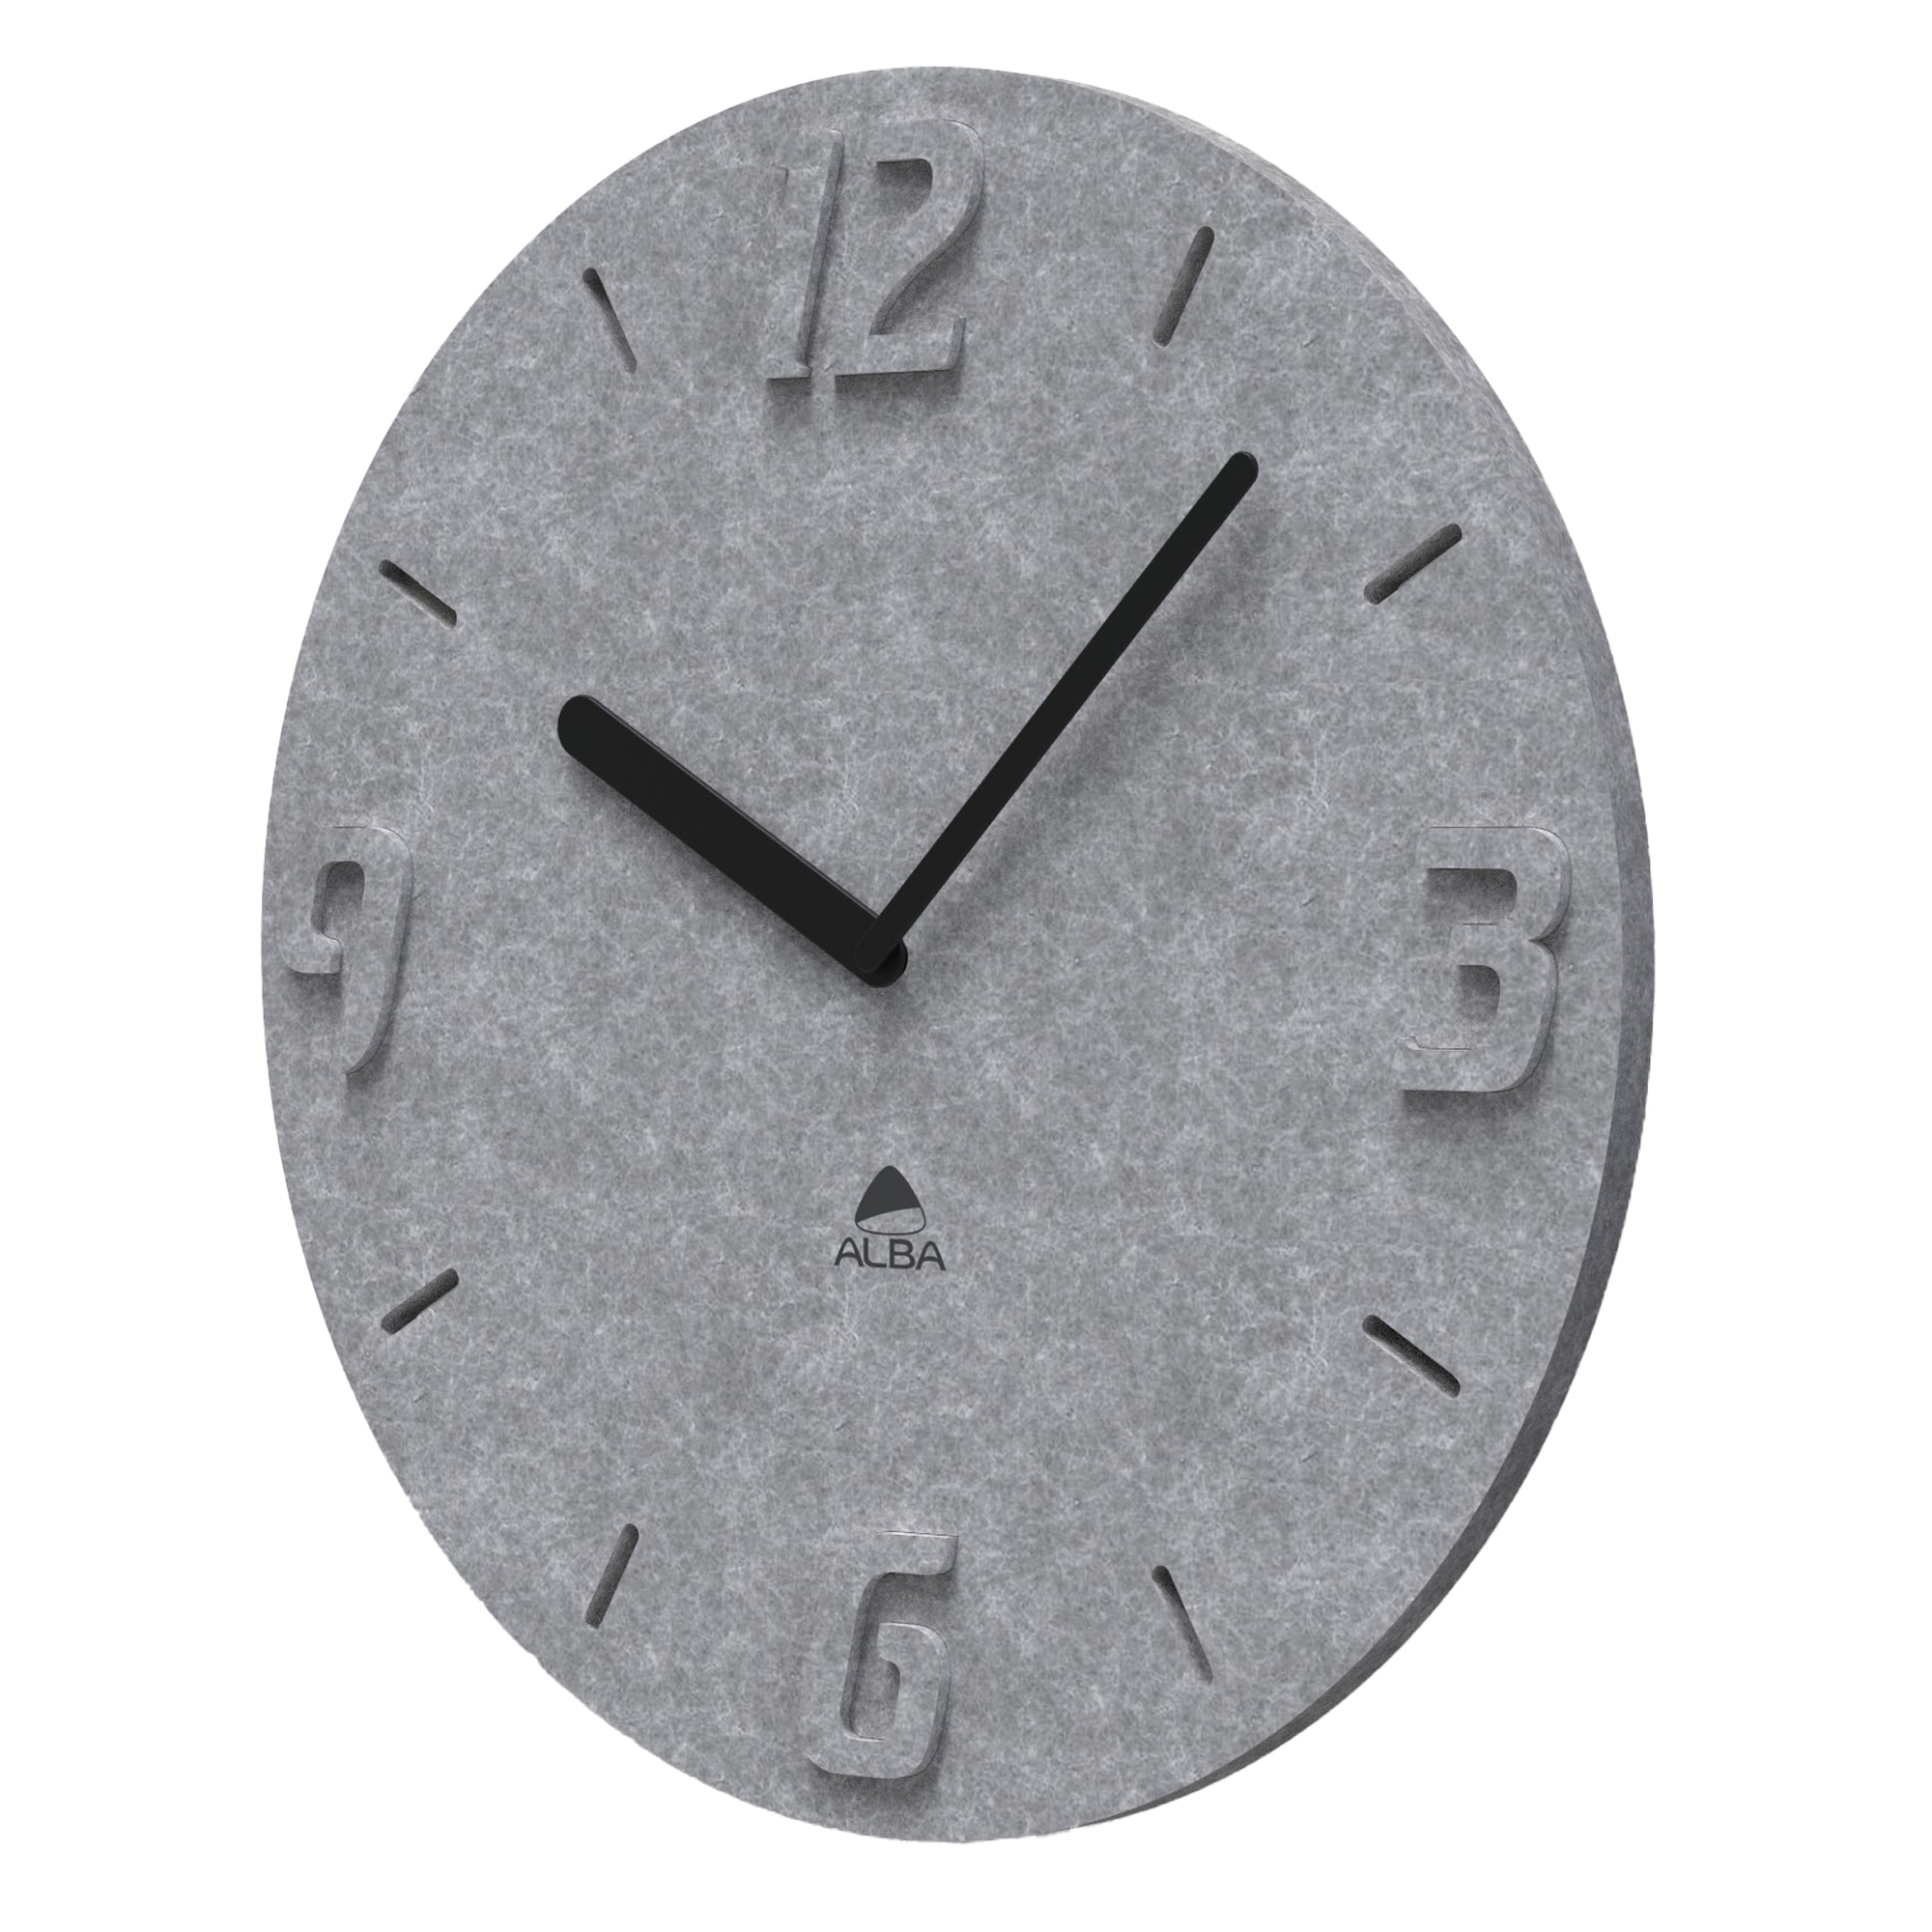 alba-orologio-parete-pet-effetto-3d-d55cm-grigio